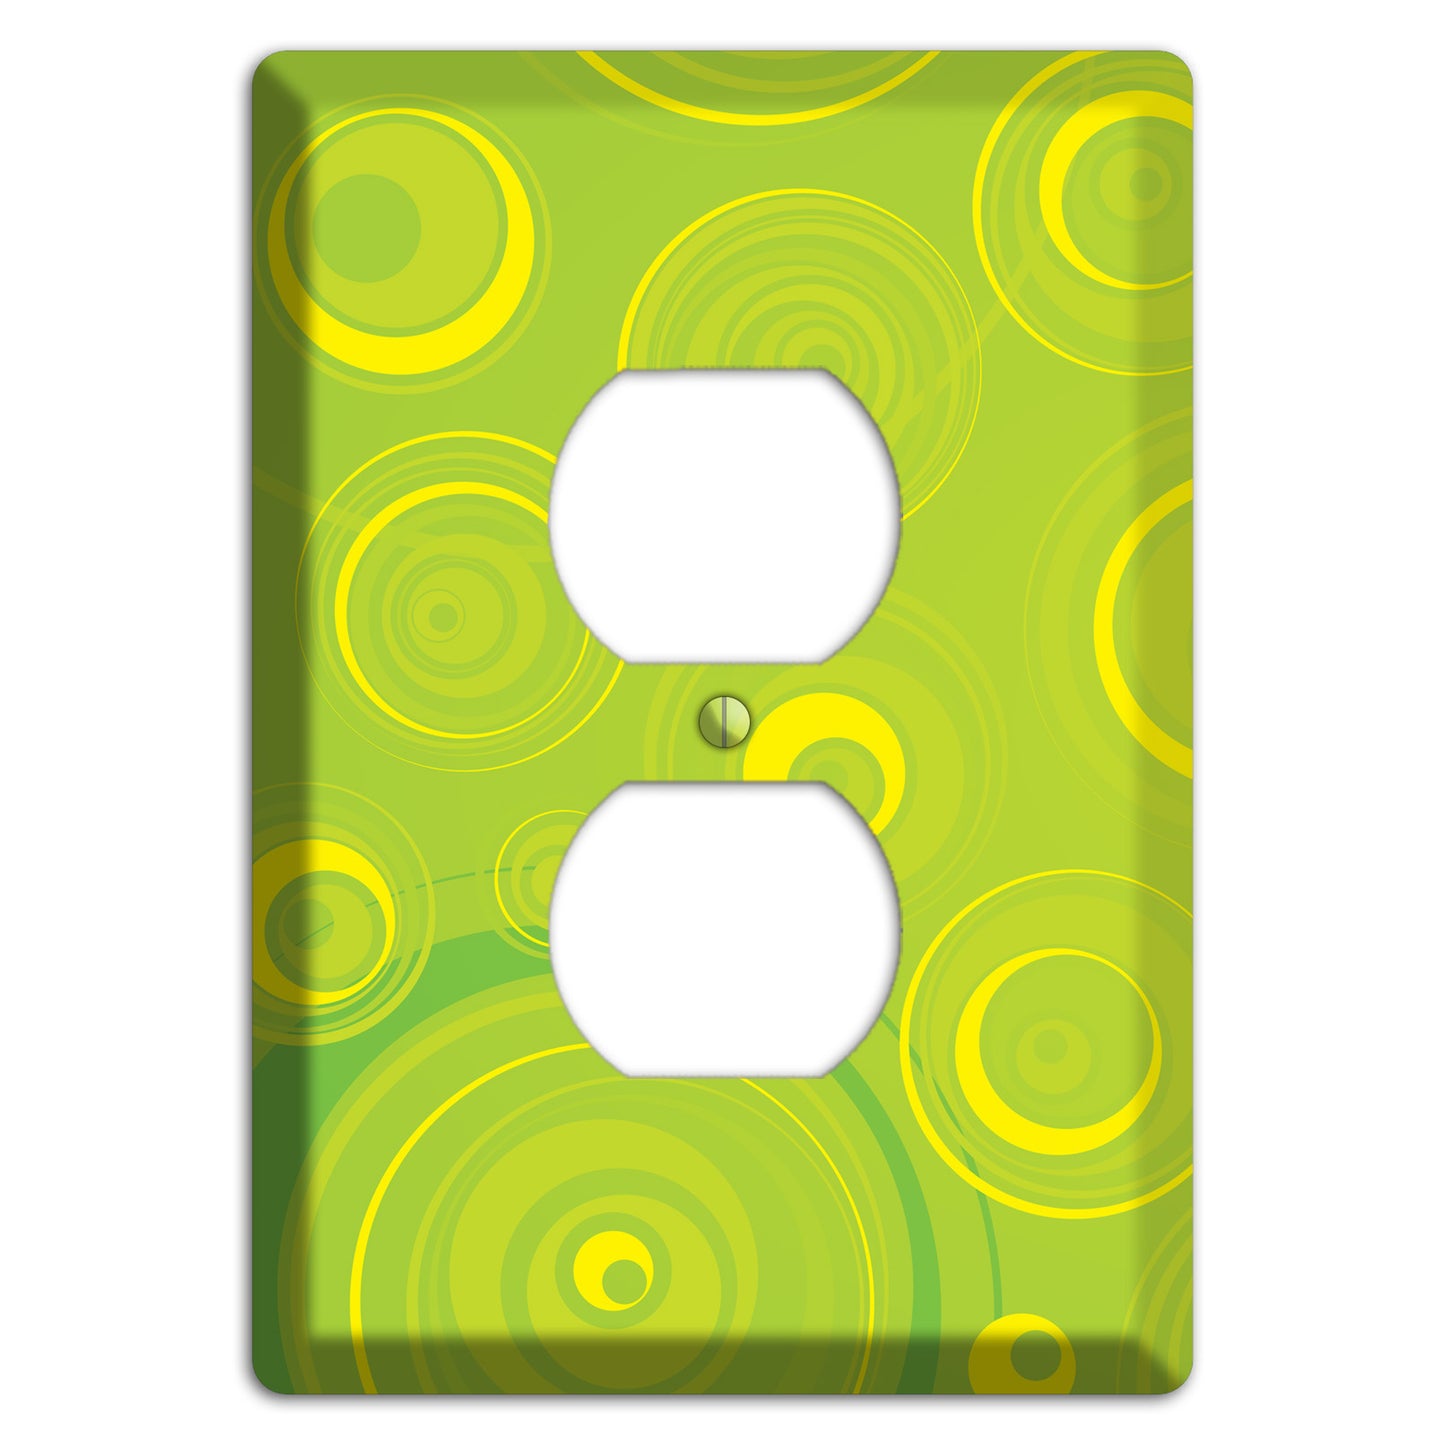 Green-yellow Circles Duplex Outlet Wallplate